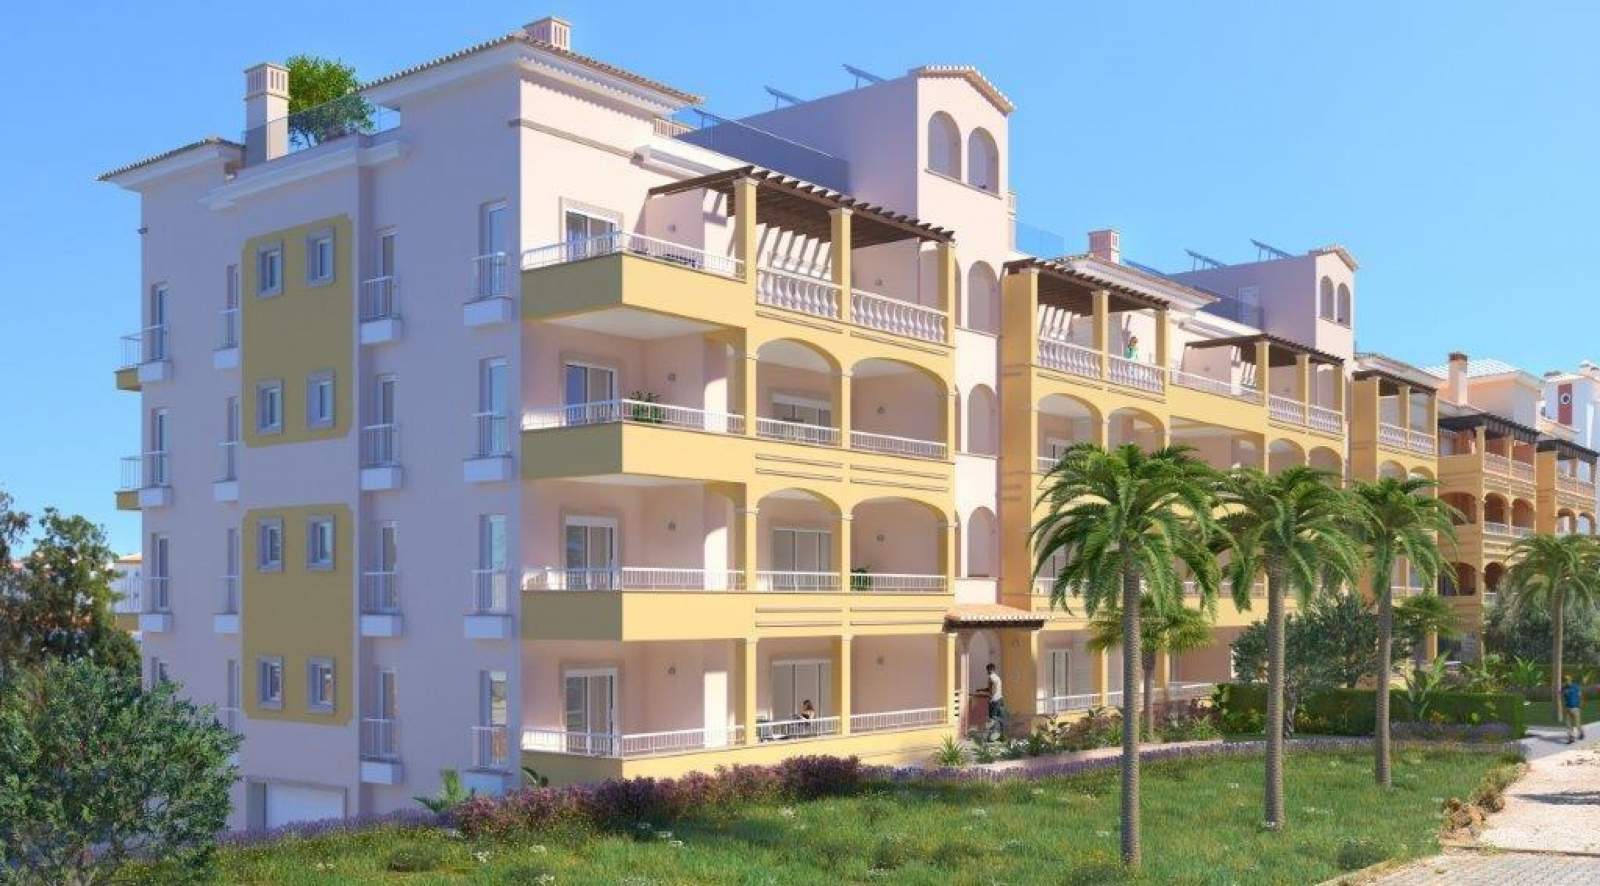 Verkauf einer Wohnung im Bau, mit Terrasse, Lagos, Algarve, Portugal_141576